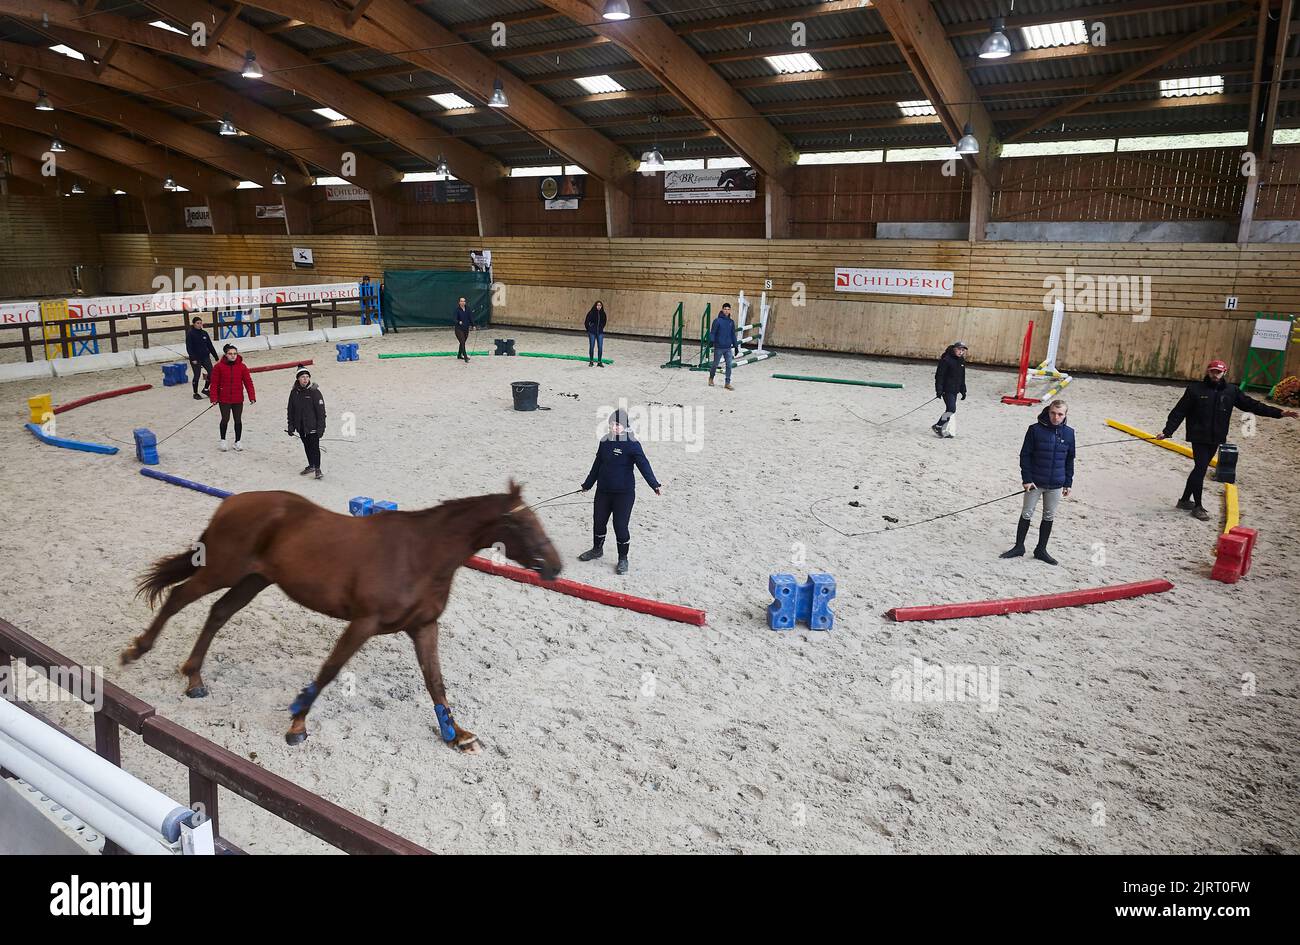 Lons-le-Saunier (centre-est de la France), 12 novembre 2021: Événement appelé “Equilons”, vente à l'amiable avec des chevaux et des poneys au centre équestre an Banque D'Images